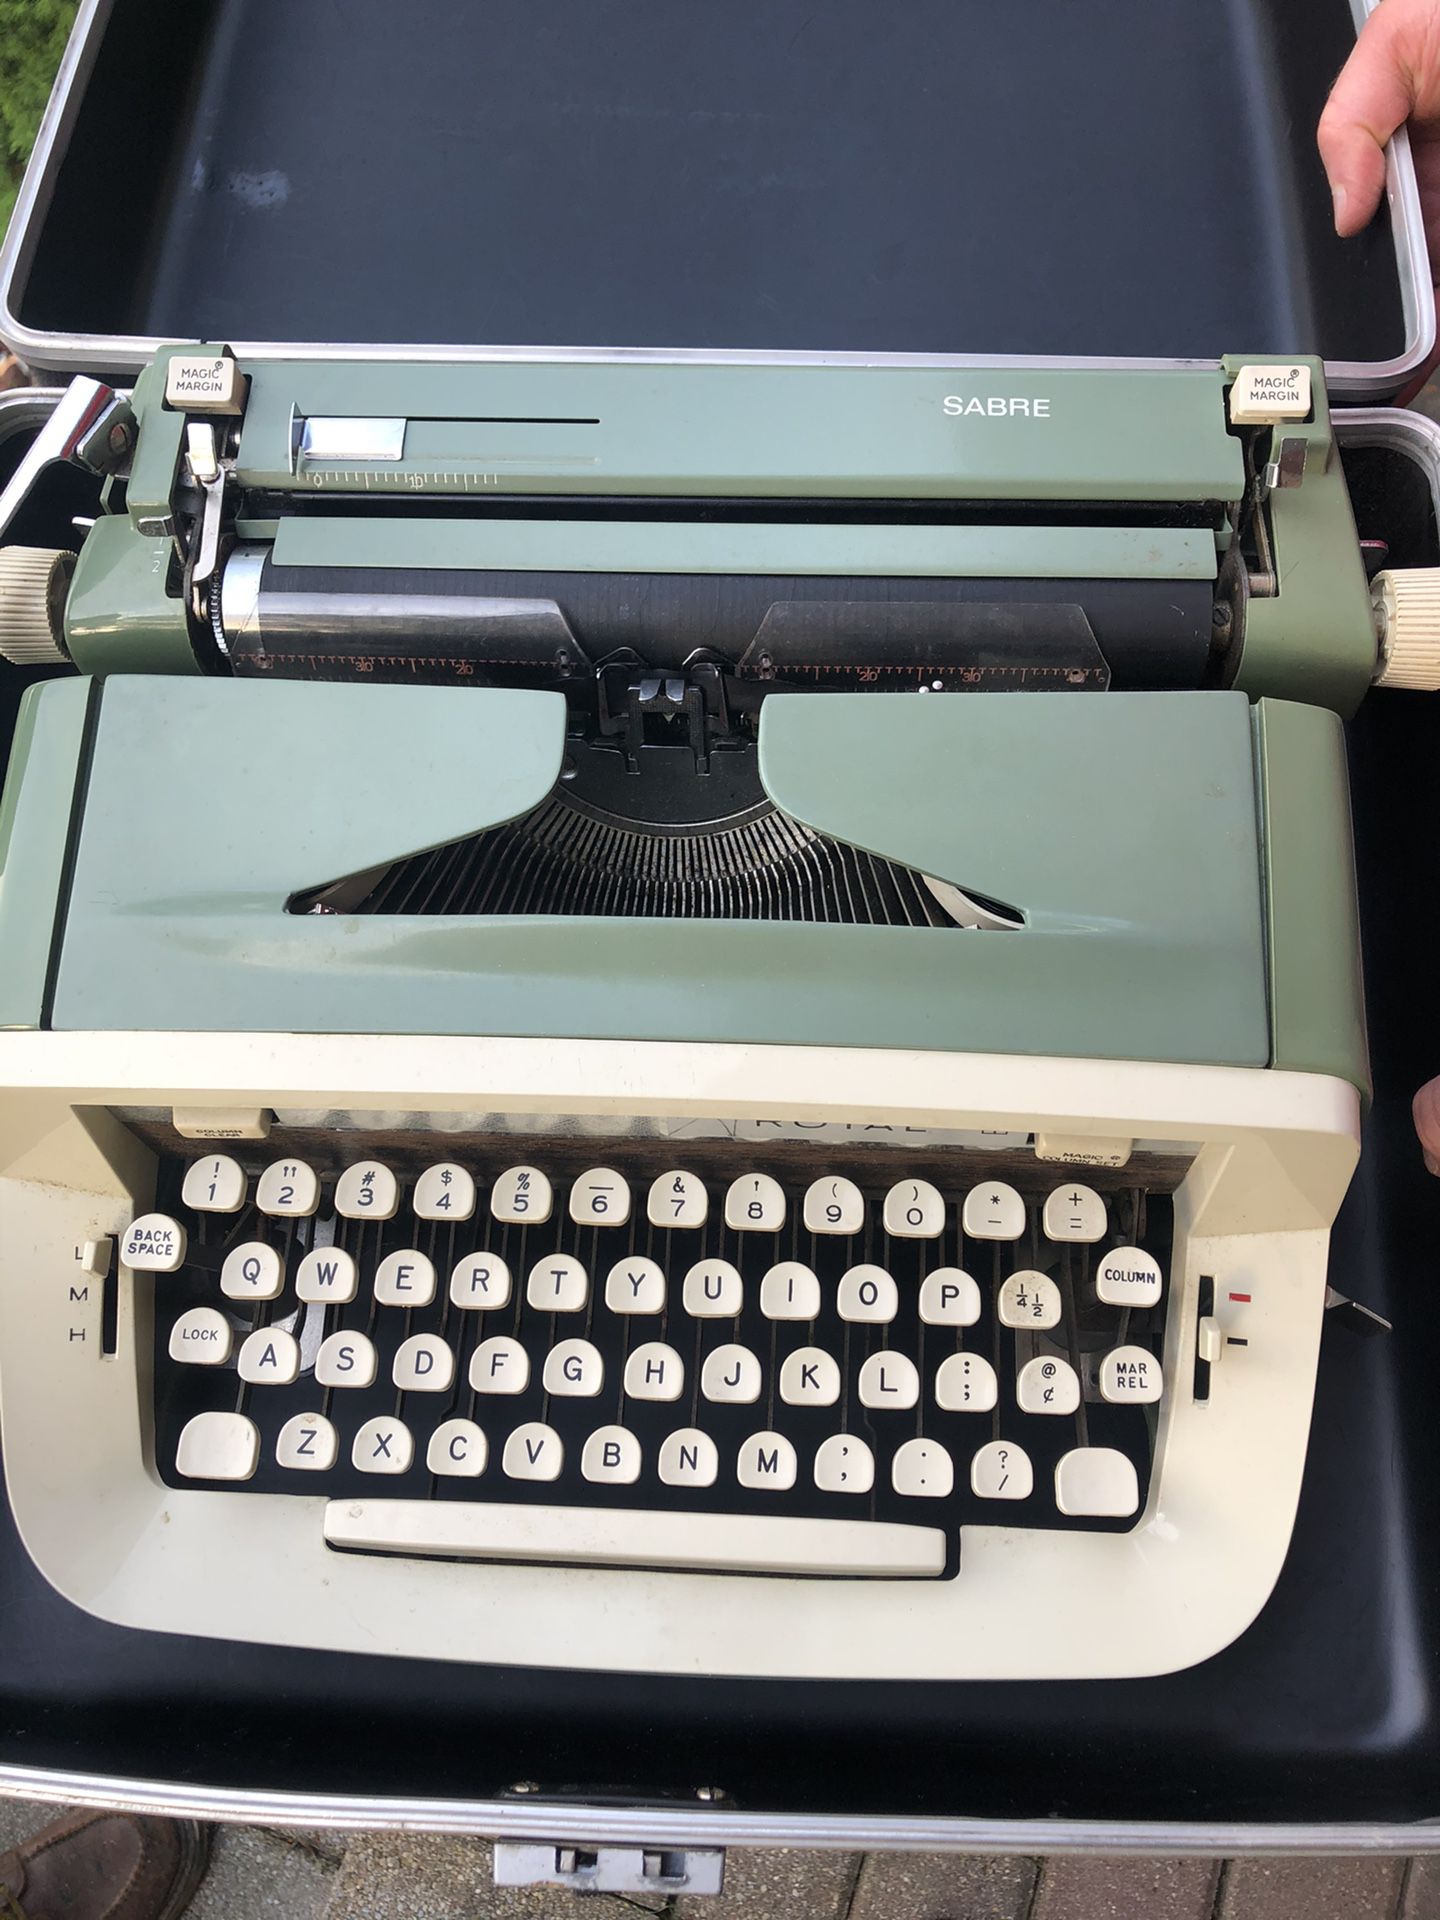 Royal Sabre Typewriter